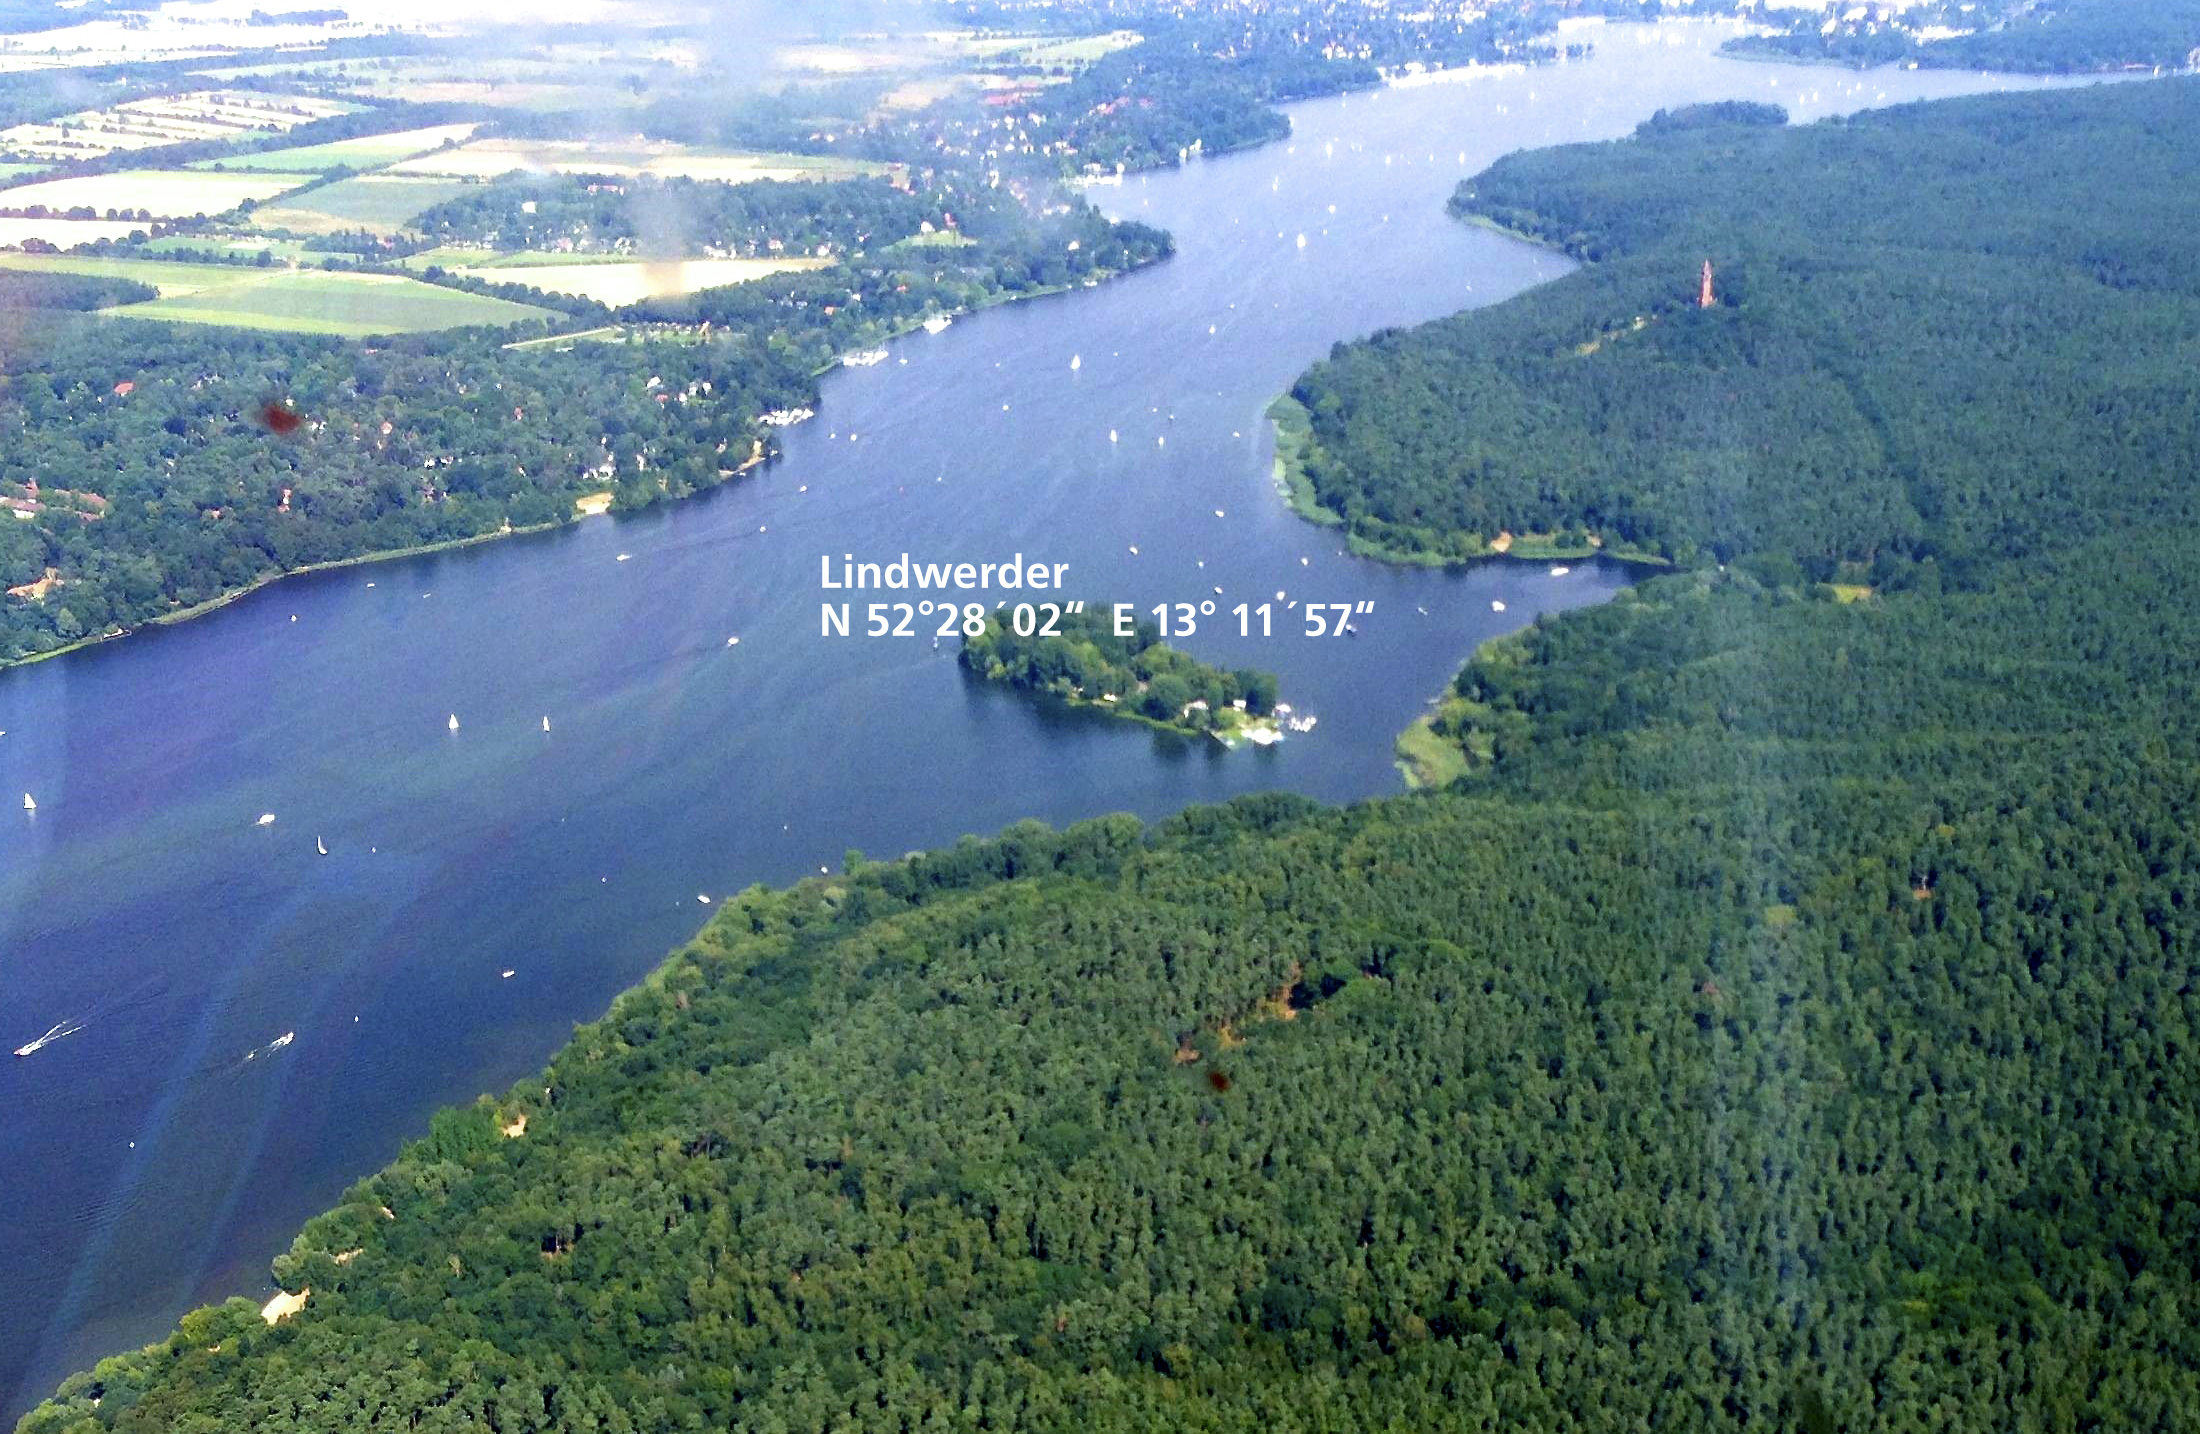 Luftbild der Insel Lindwerder in der Havel